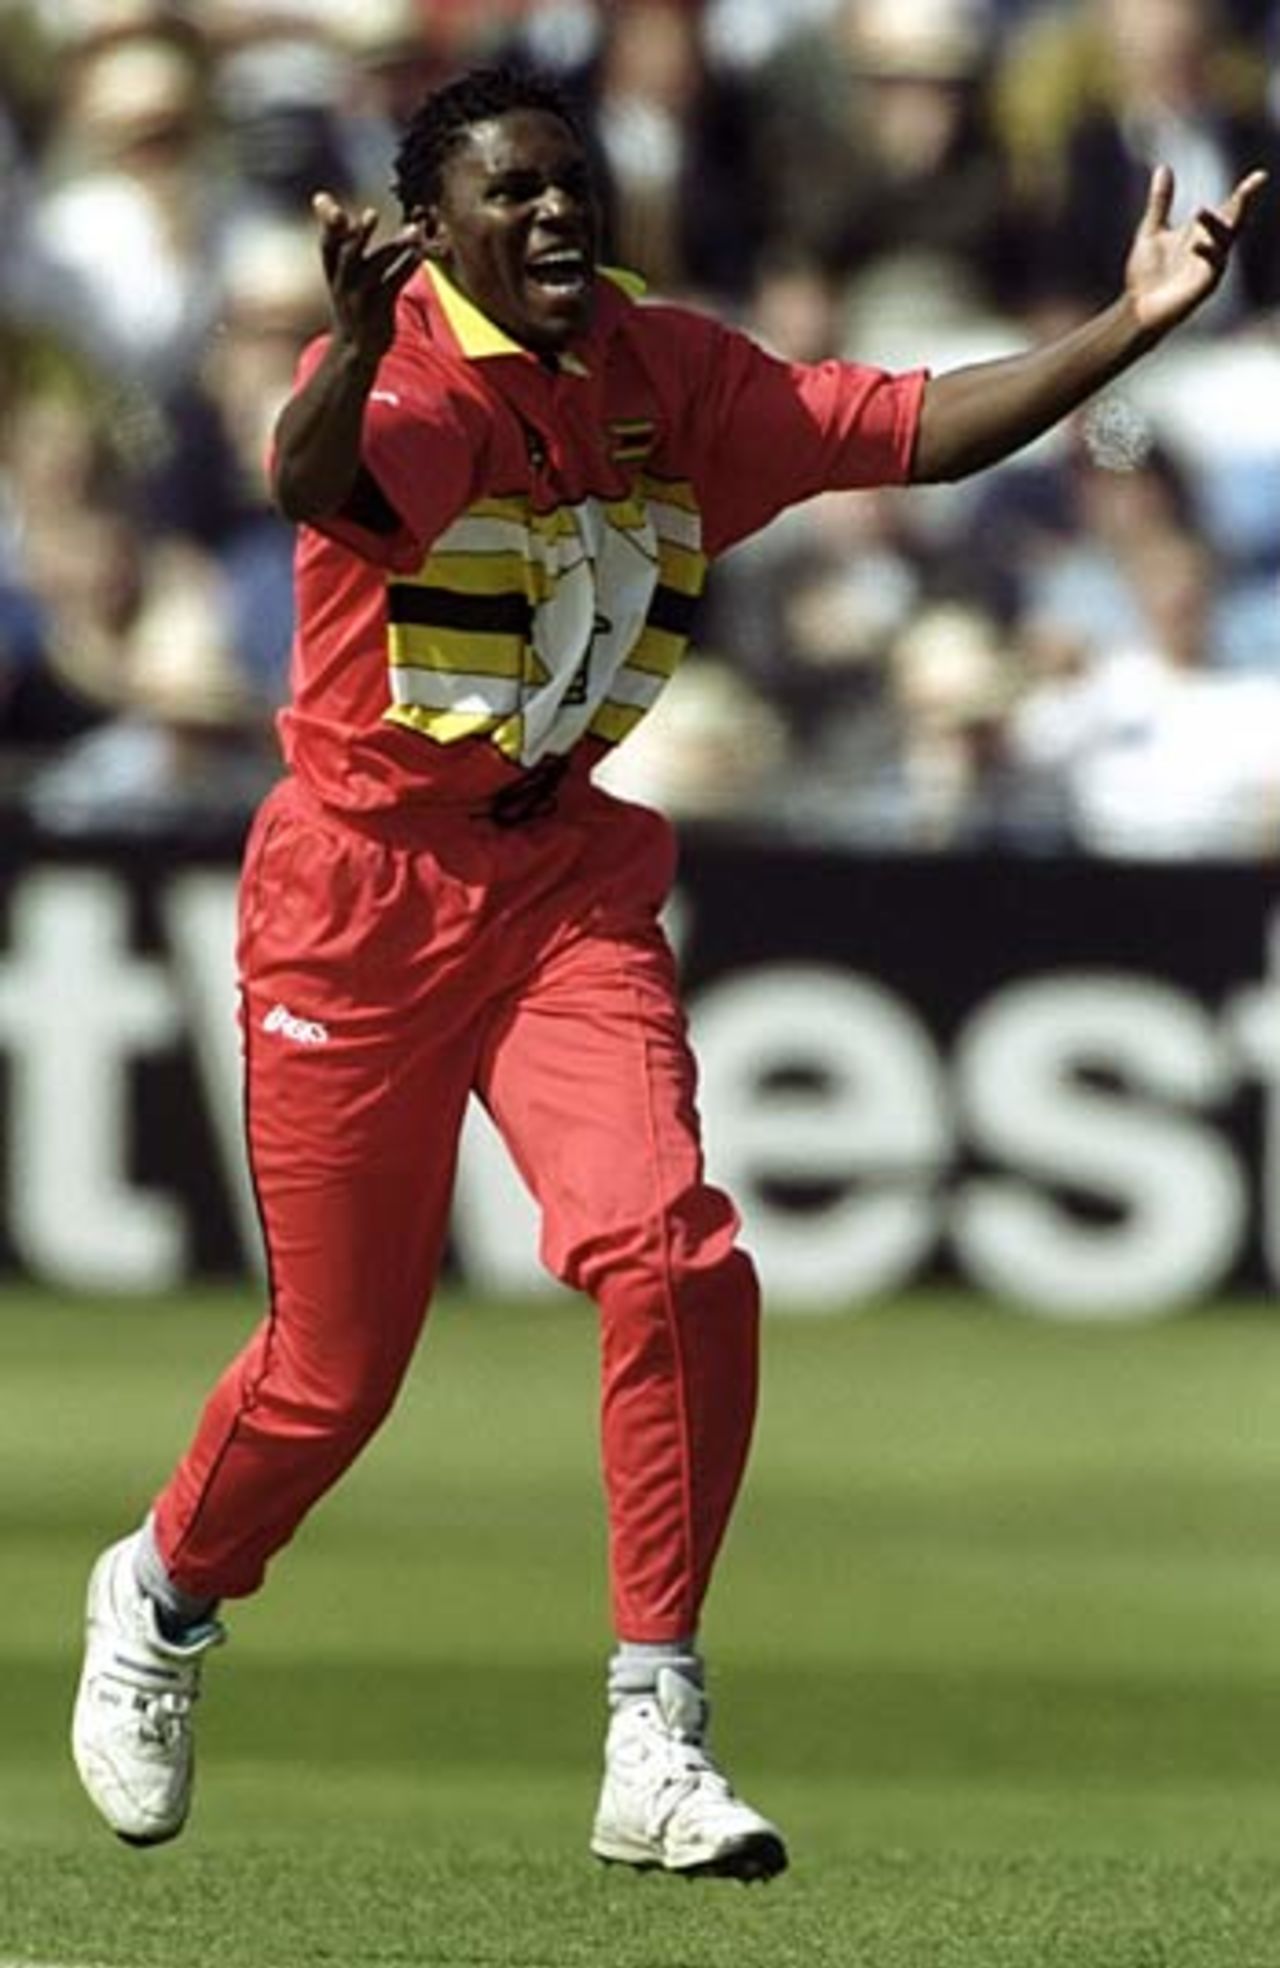 Pommie Mbangwa celebrates an England wicket, England v Zimbabwe, May 25, 1999